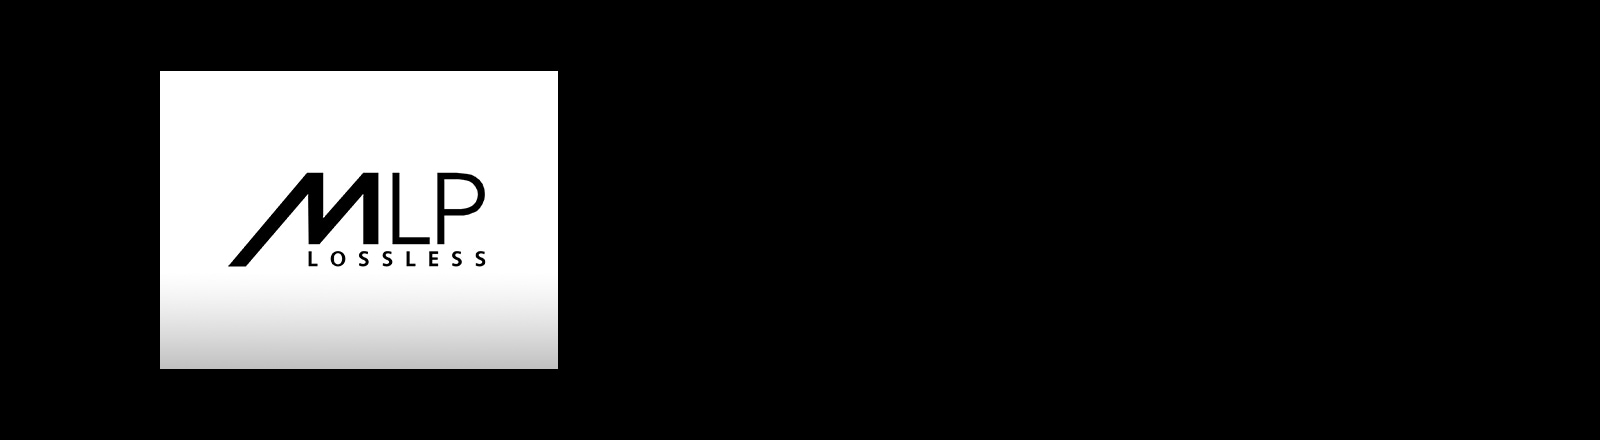 Hình ảnh logo "MLP"